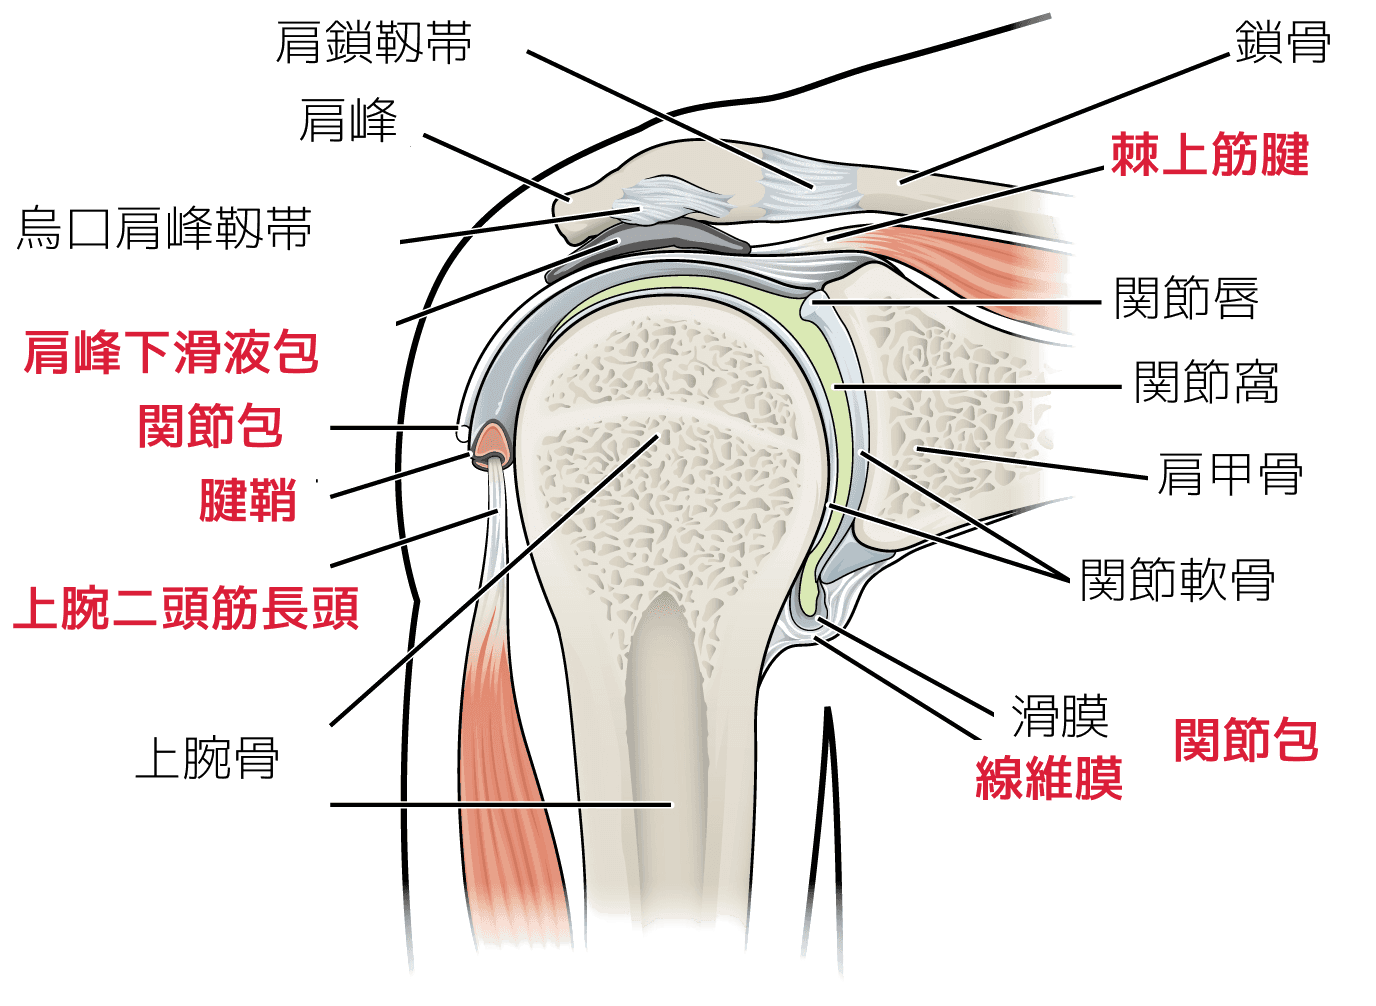 五十肩で炎症が起きやすい箇所は、棘上筋腱・肩峰下滑液包・関節包・腱鞘・上腕二頭筋長頭